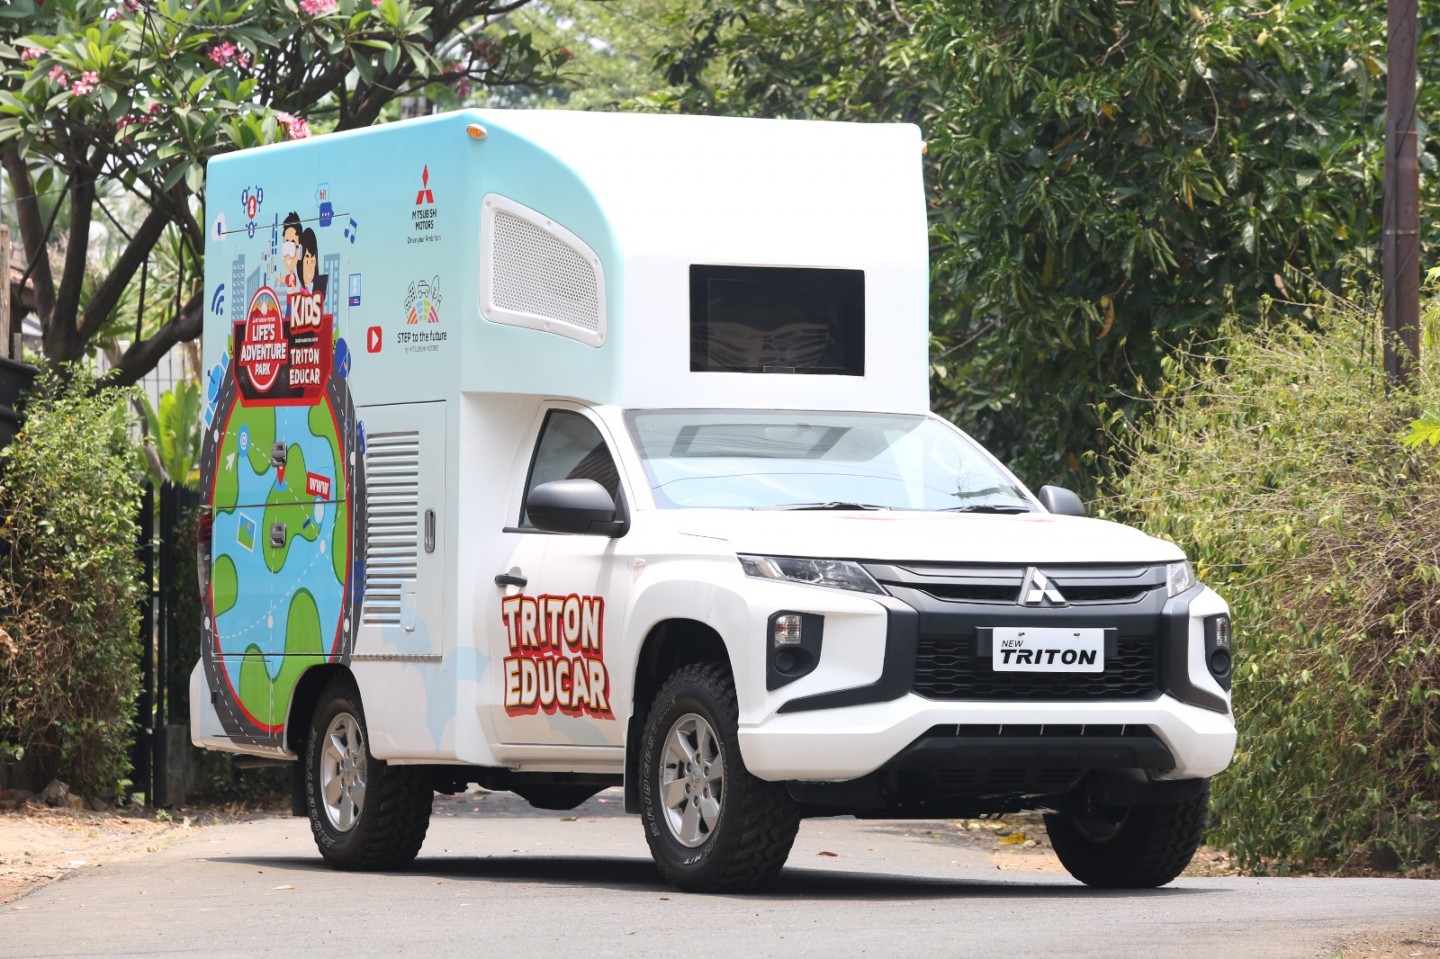 Mitsubishi TRITON EDUCAR Memulai Perjalanannya untuk Memperkaya Pengalaman Anak-Anak di Seluruh Indonesia